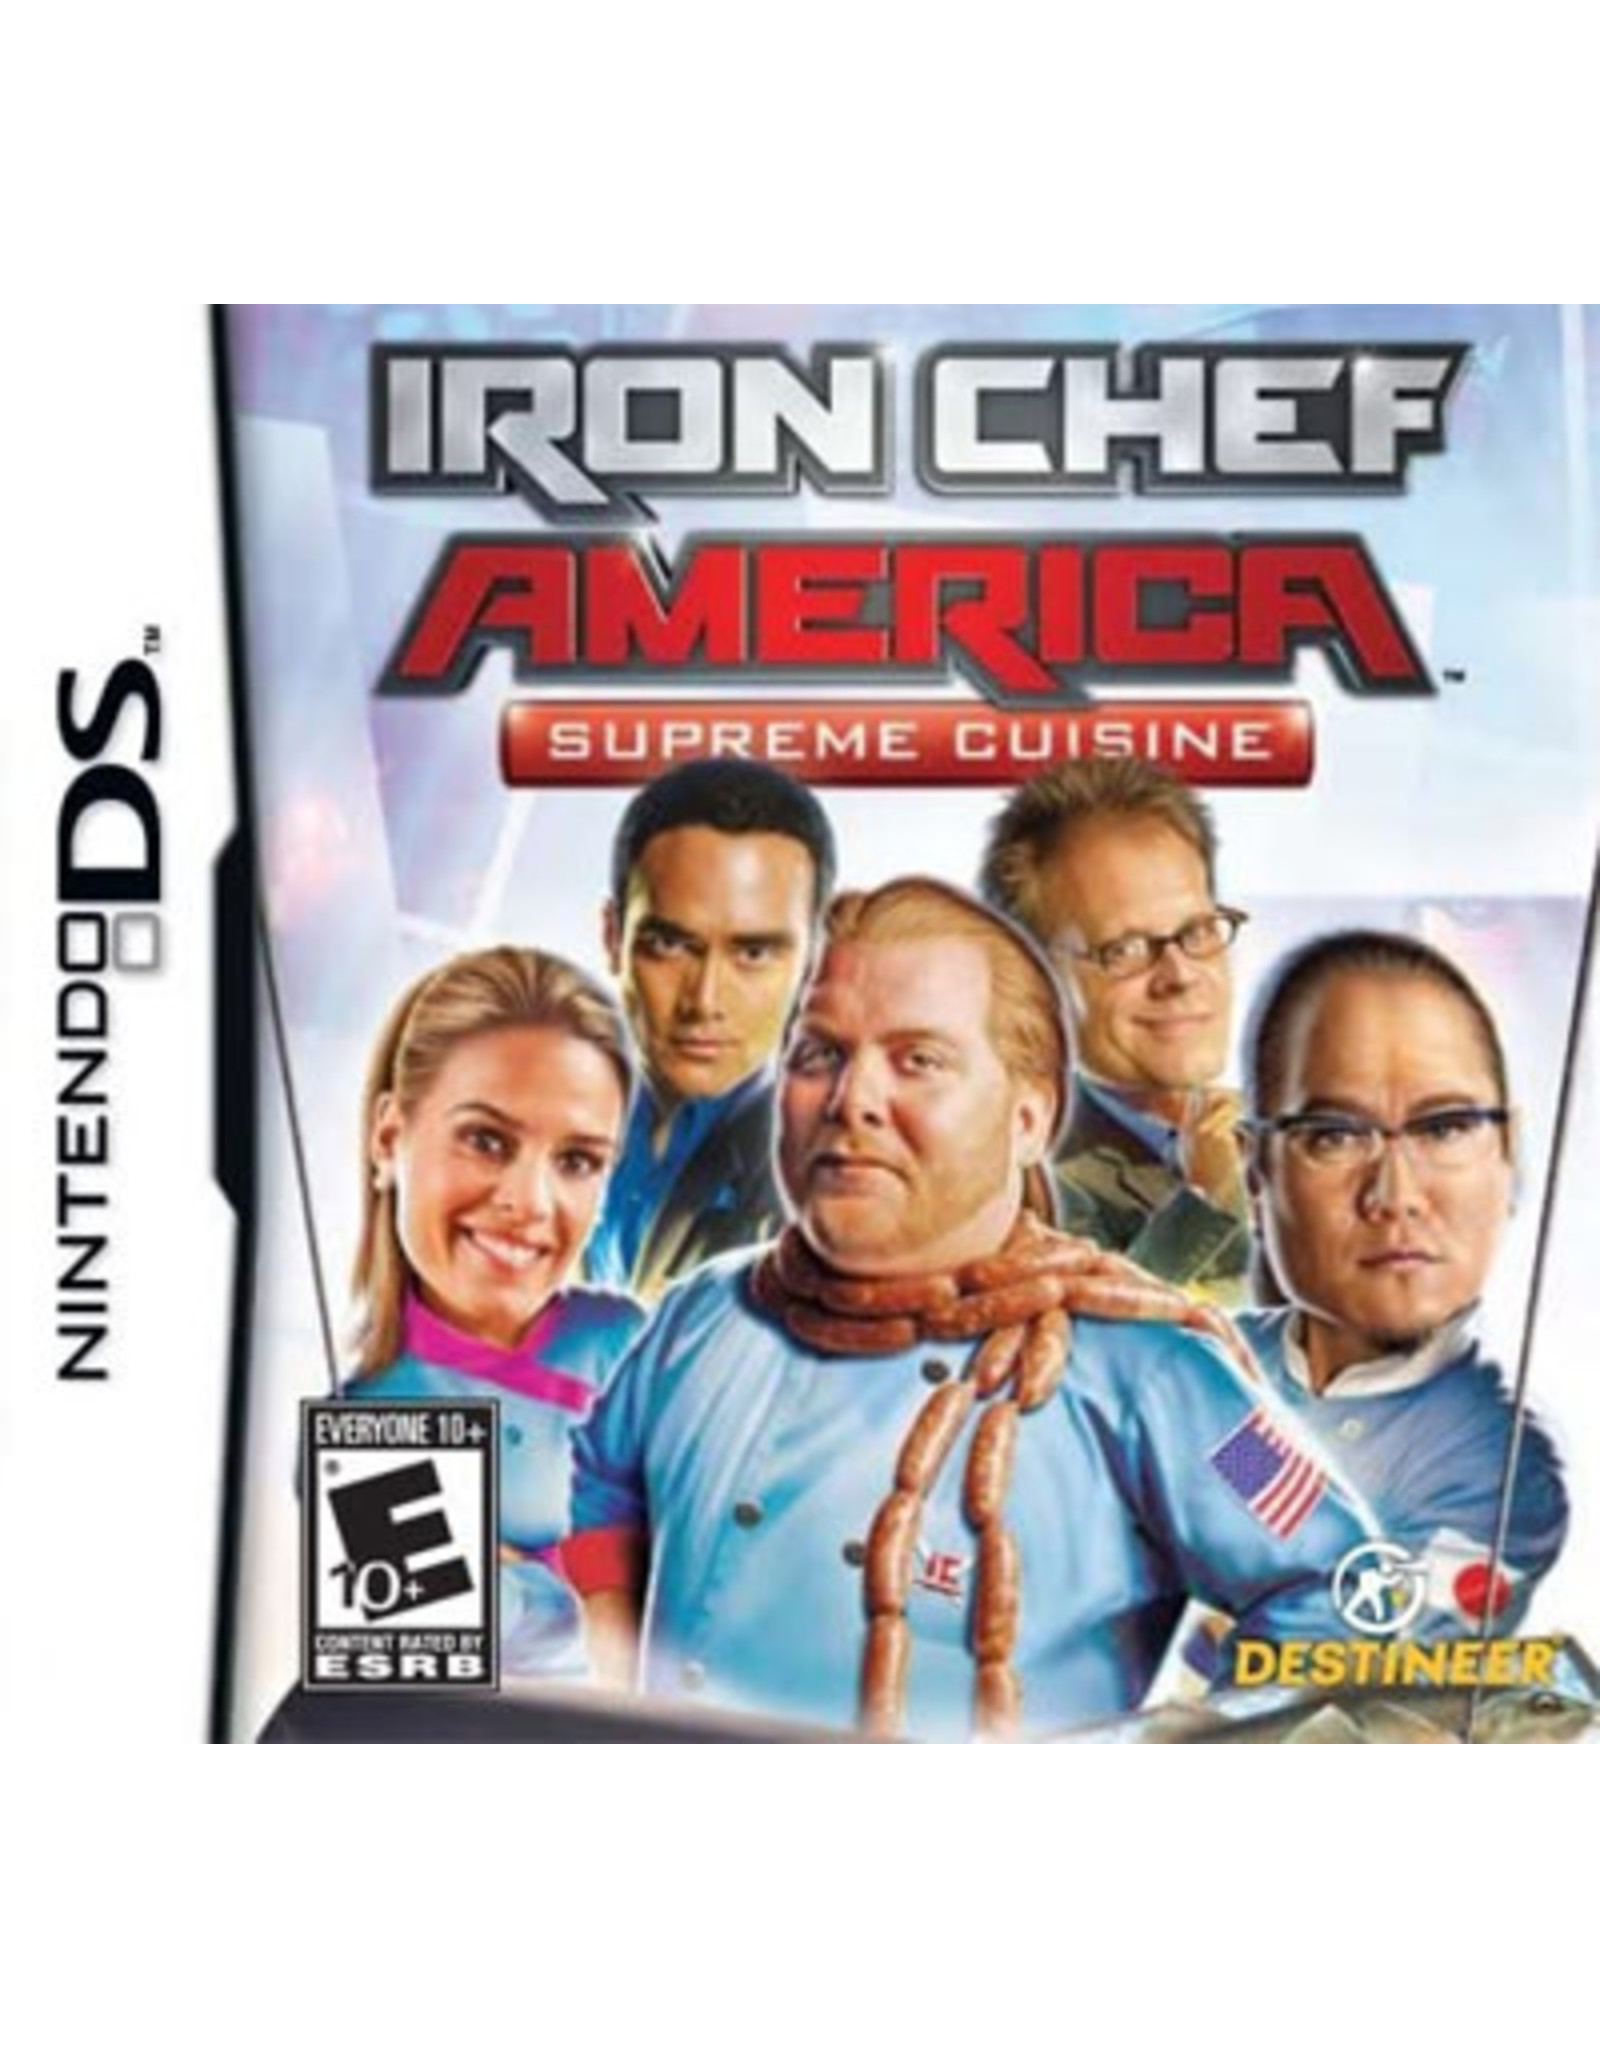 Nintendo DS Iron Chef America Supreme Cuisine (CiB)